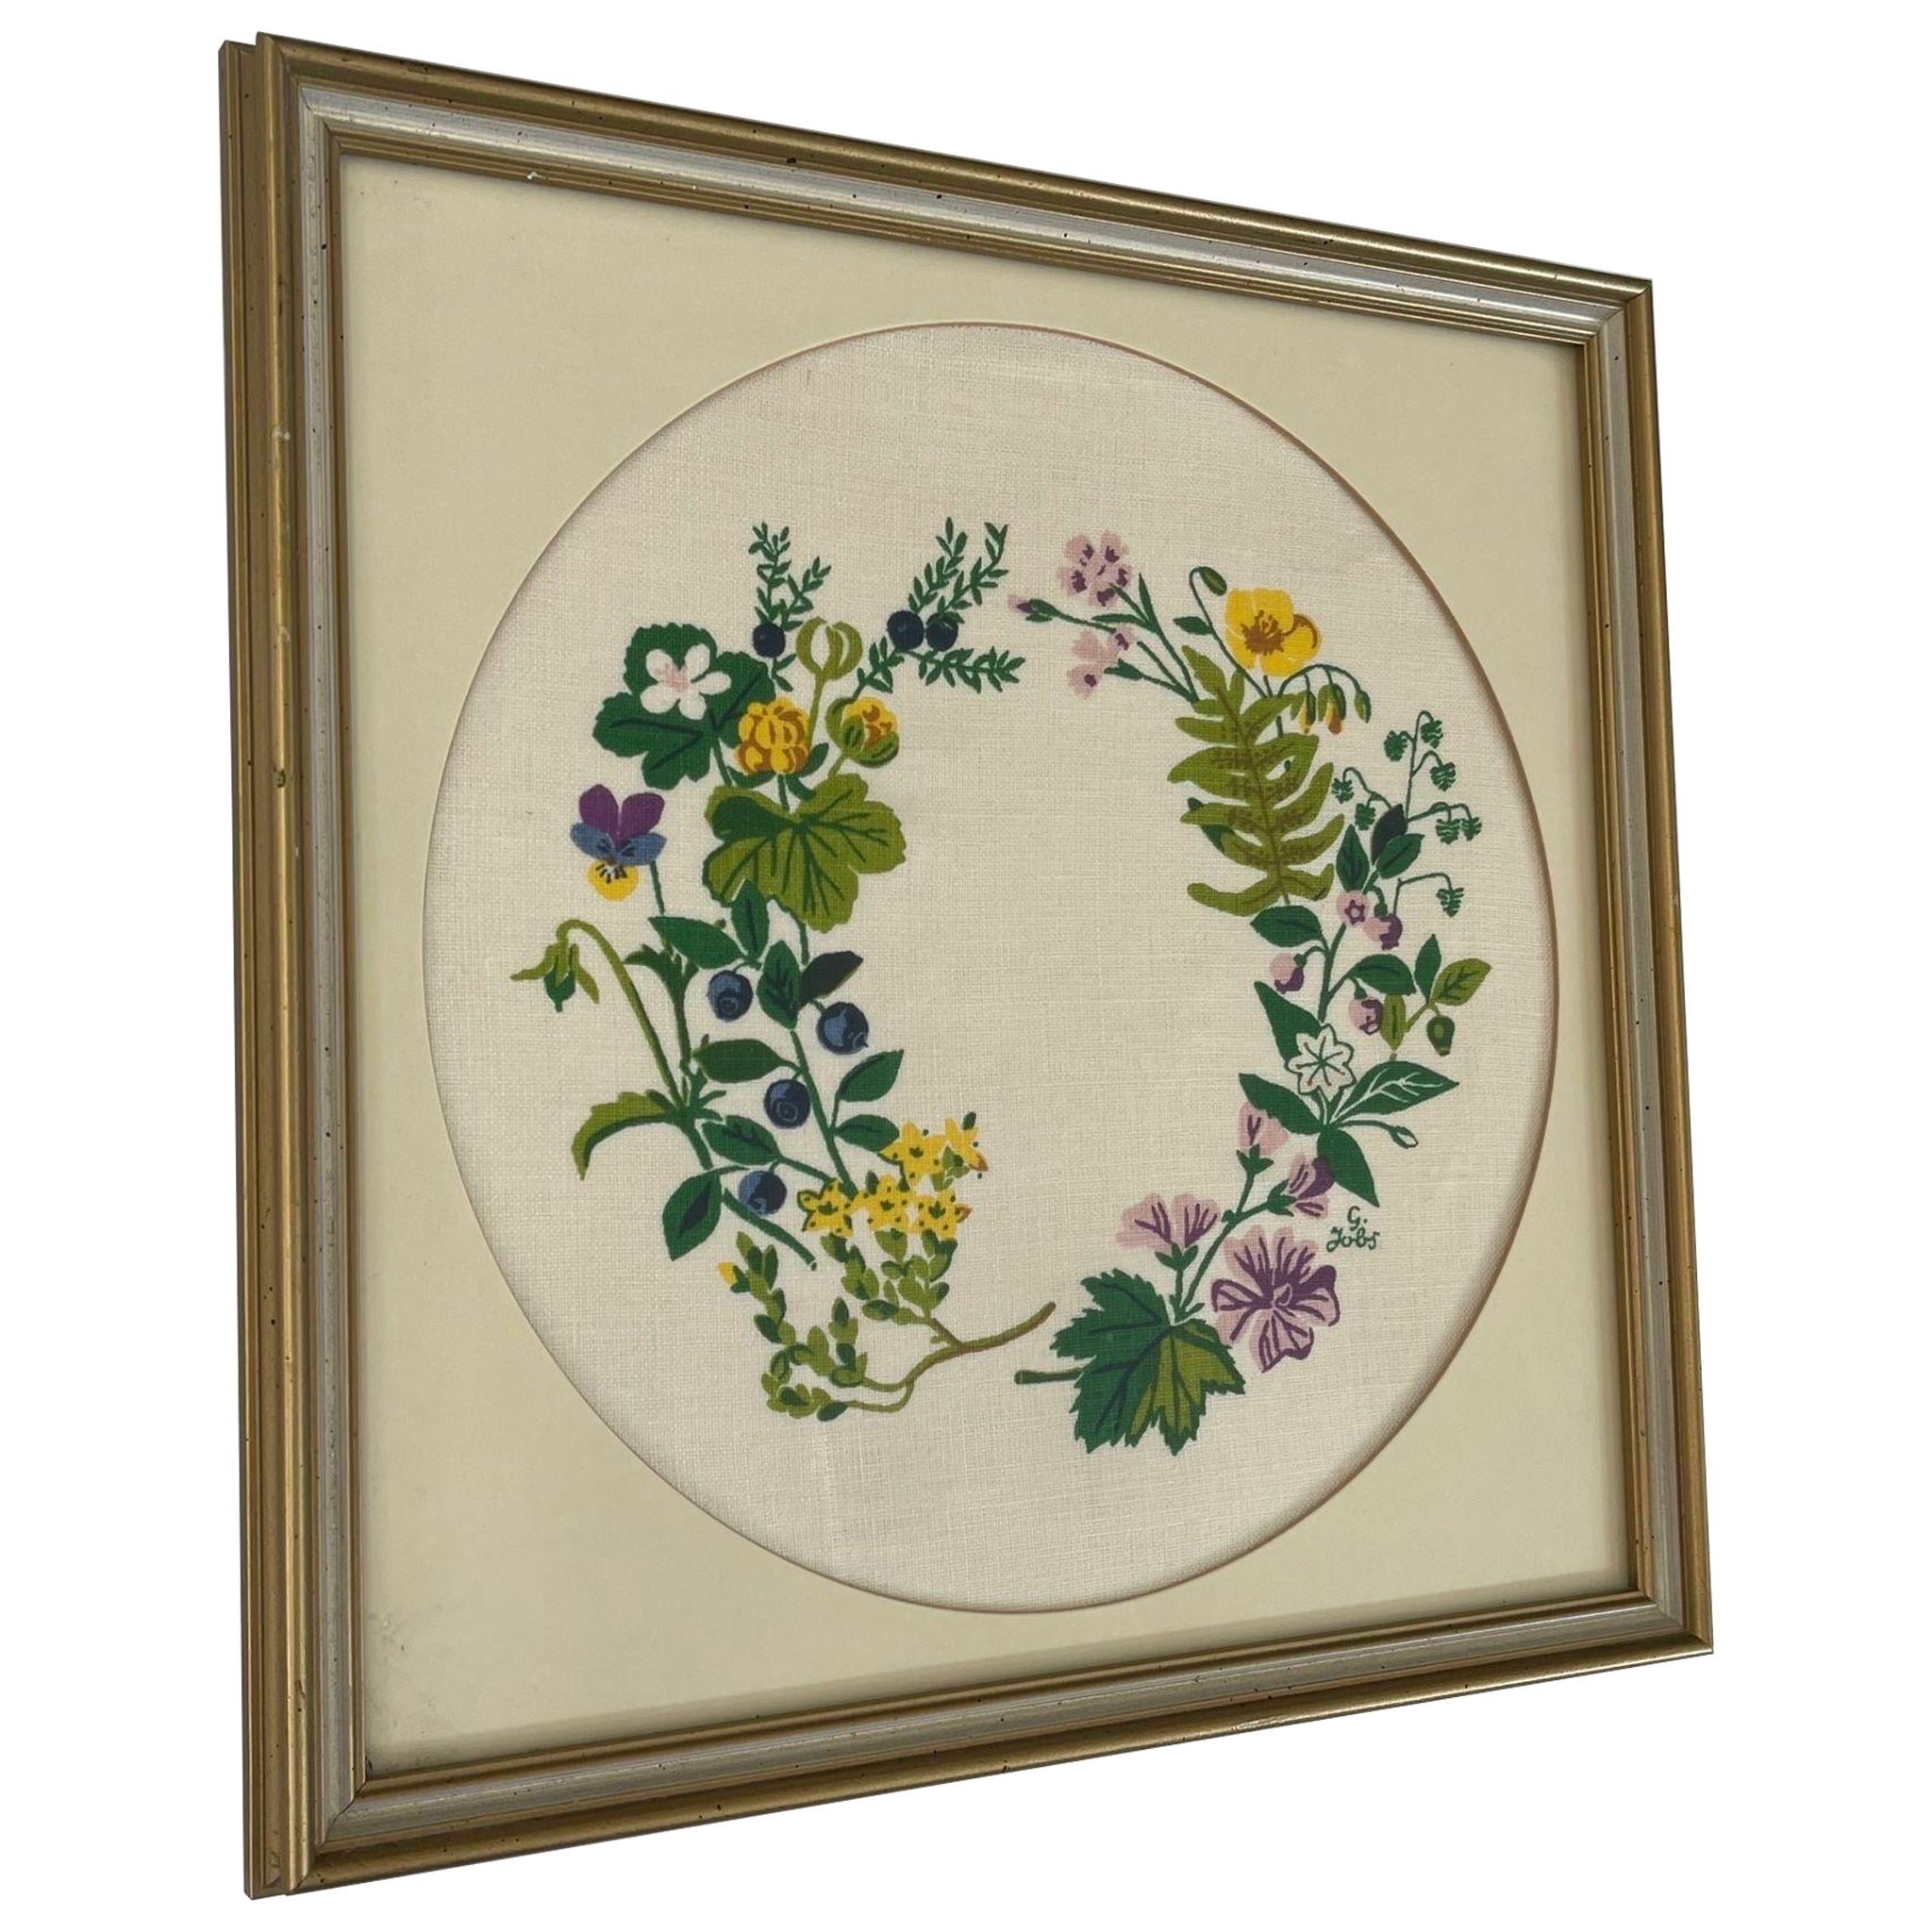 Vintage Original Framed and Signed Floral Wreath Artwork. For Sale